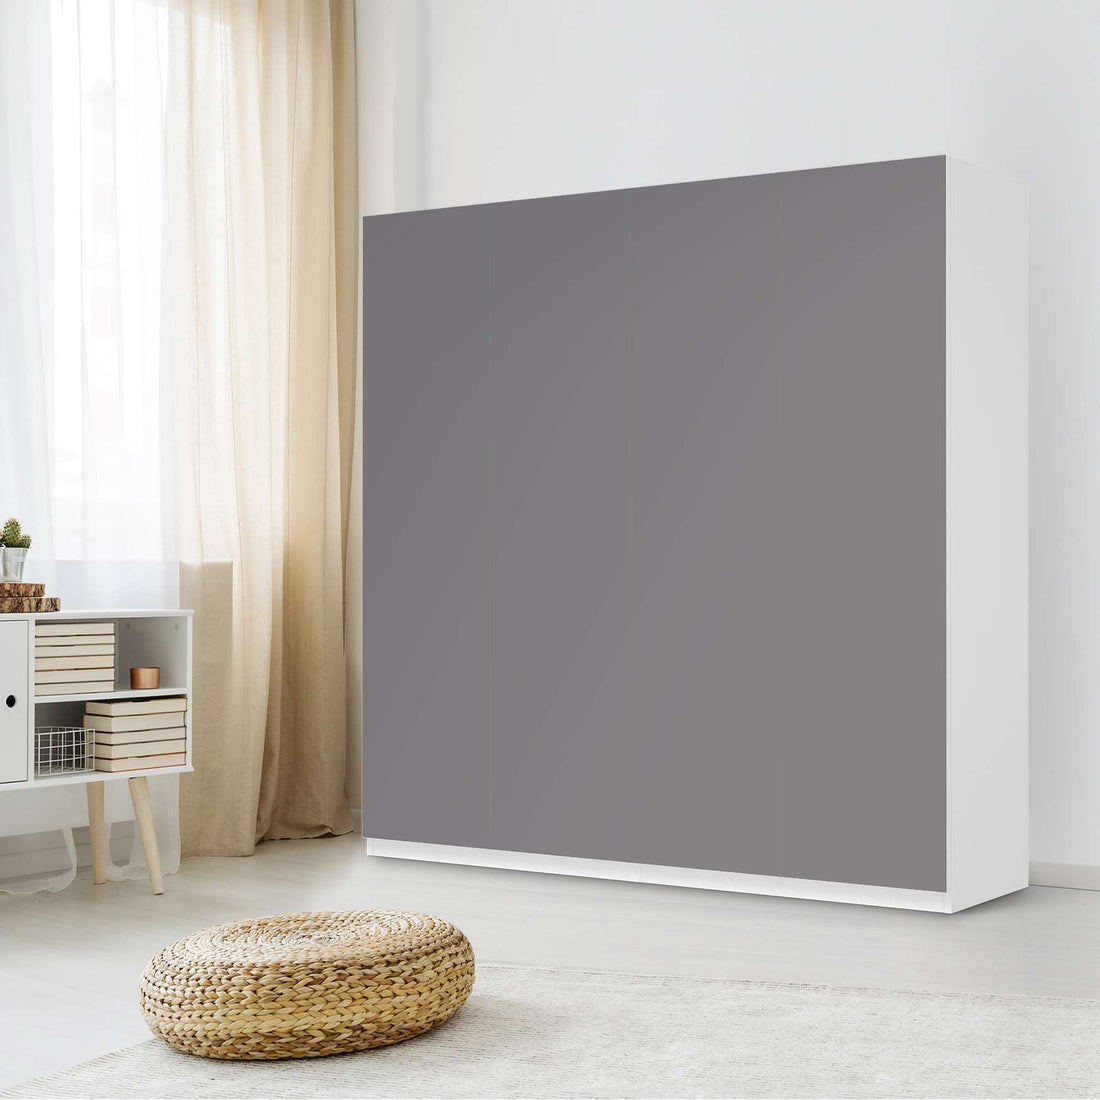 Klebefolie für Schränke Grau Light - IKEA Pax Schrank 201 cm Höhe - 4 Türen - Schlafzimmer